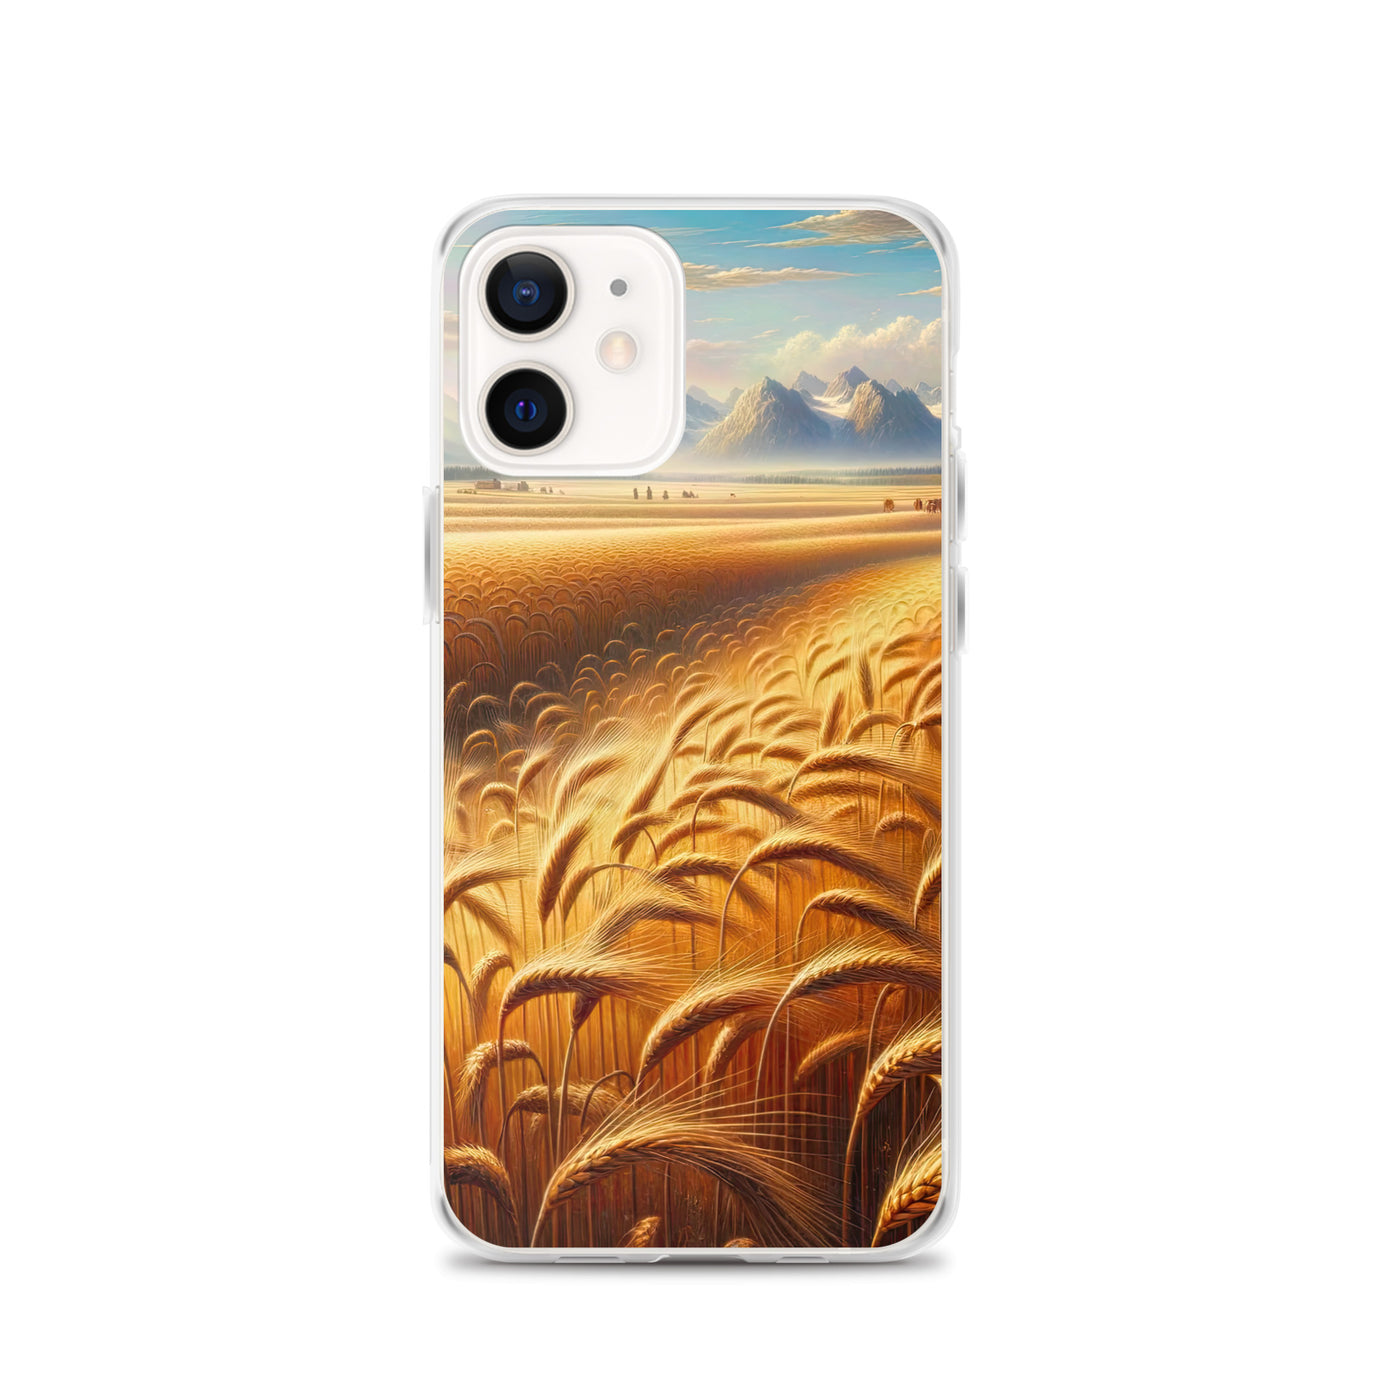 Ölgemälde eines bayerischen Weizenfeldes, endlose goldene Halme (TR) - iPhone Schutzhülle (durchsichtig) xxx yyy zzz iPhone 12